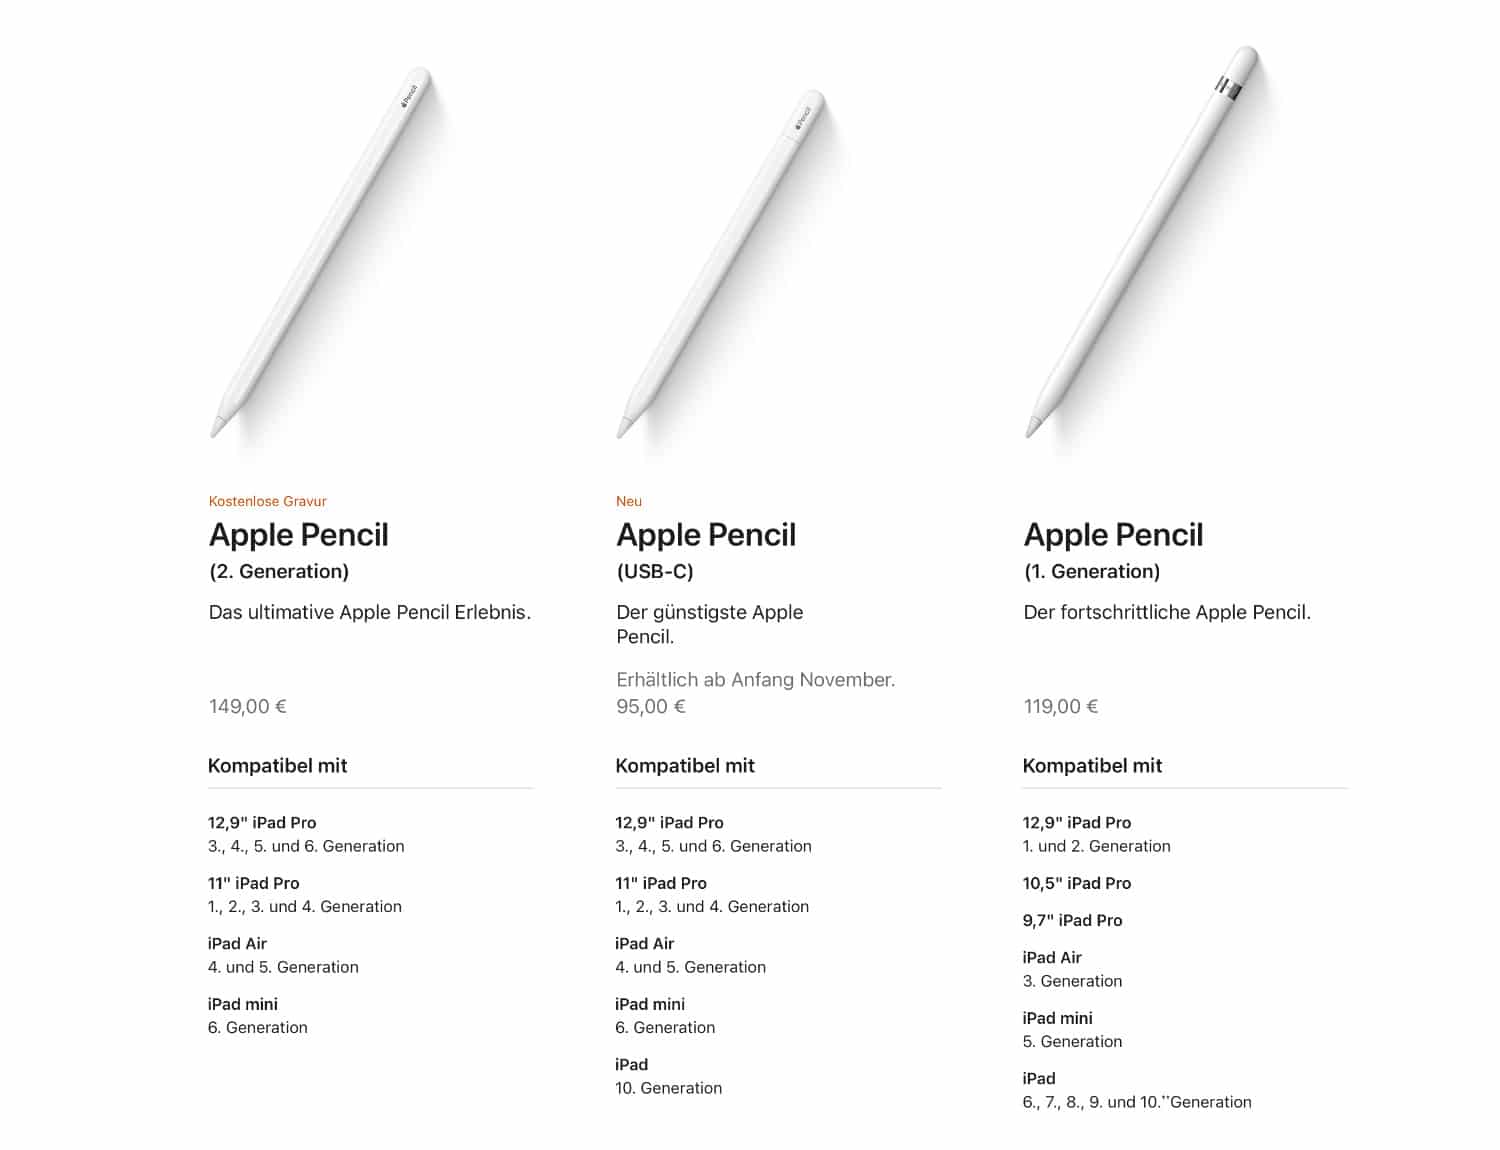 Vergleich, Preise und Kompatibilität der drei Apple Pencil-Modelle